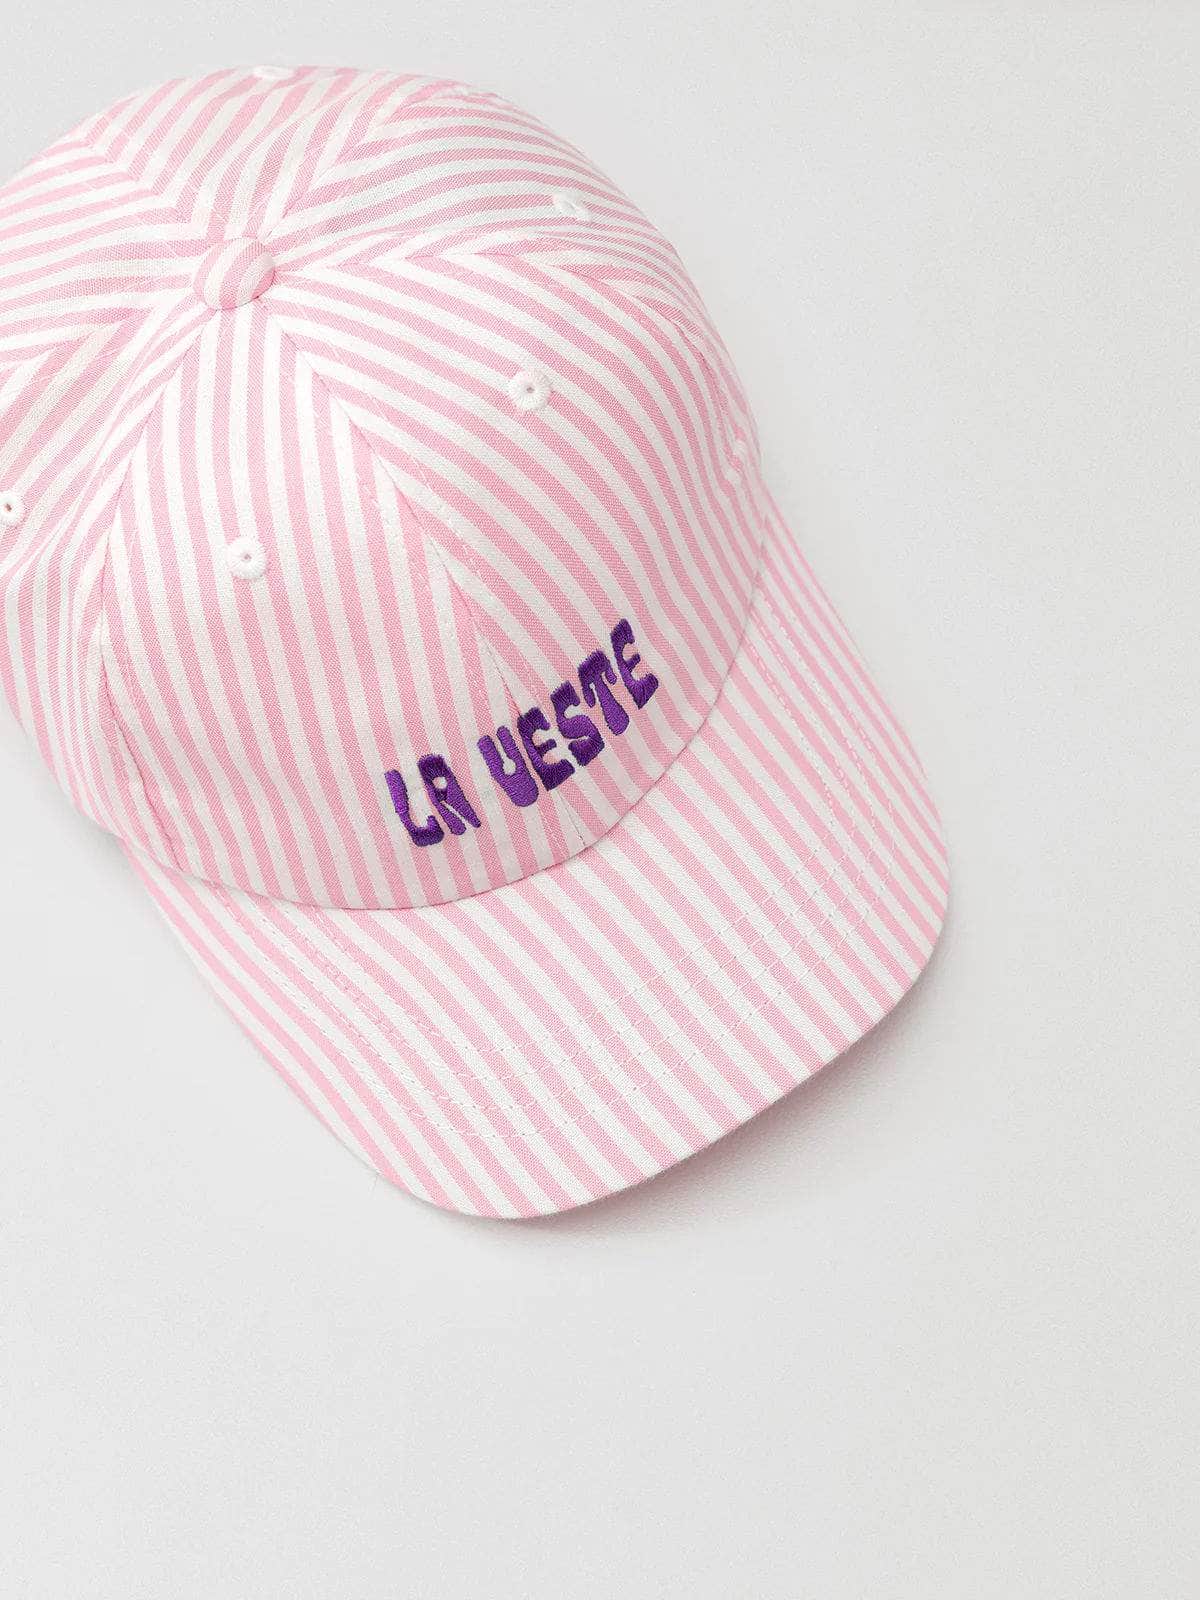 Pink Striped Cap